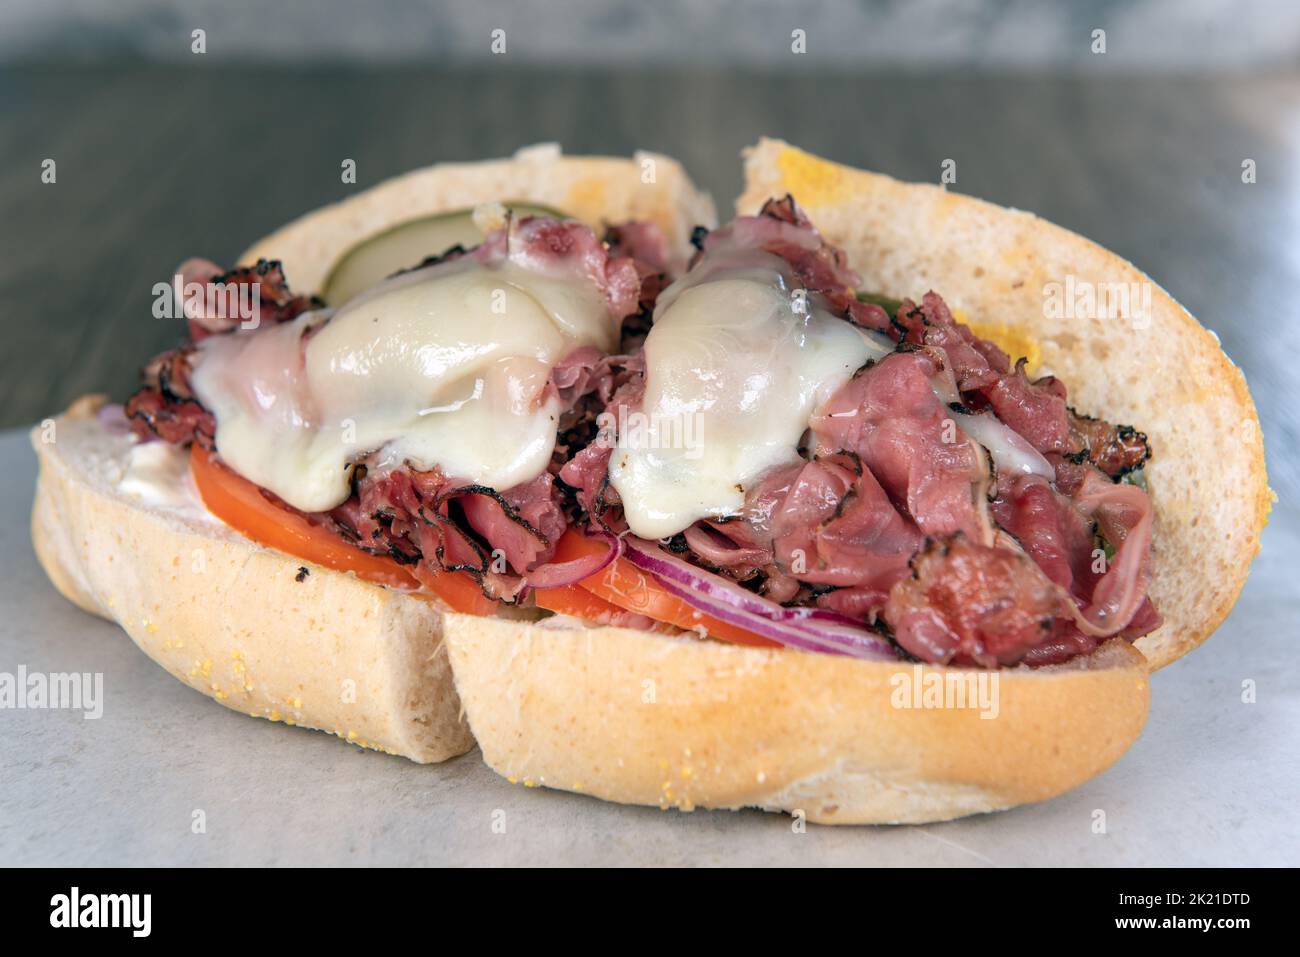 Das Mittagessen wird mit einem beladenen Pastrami-Sub-Sandwich serviert, das mit geschmolzenem Käse überfüllt ist. Stockfoto